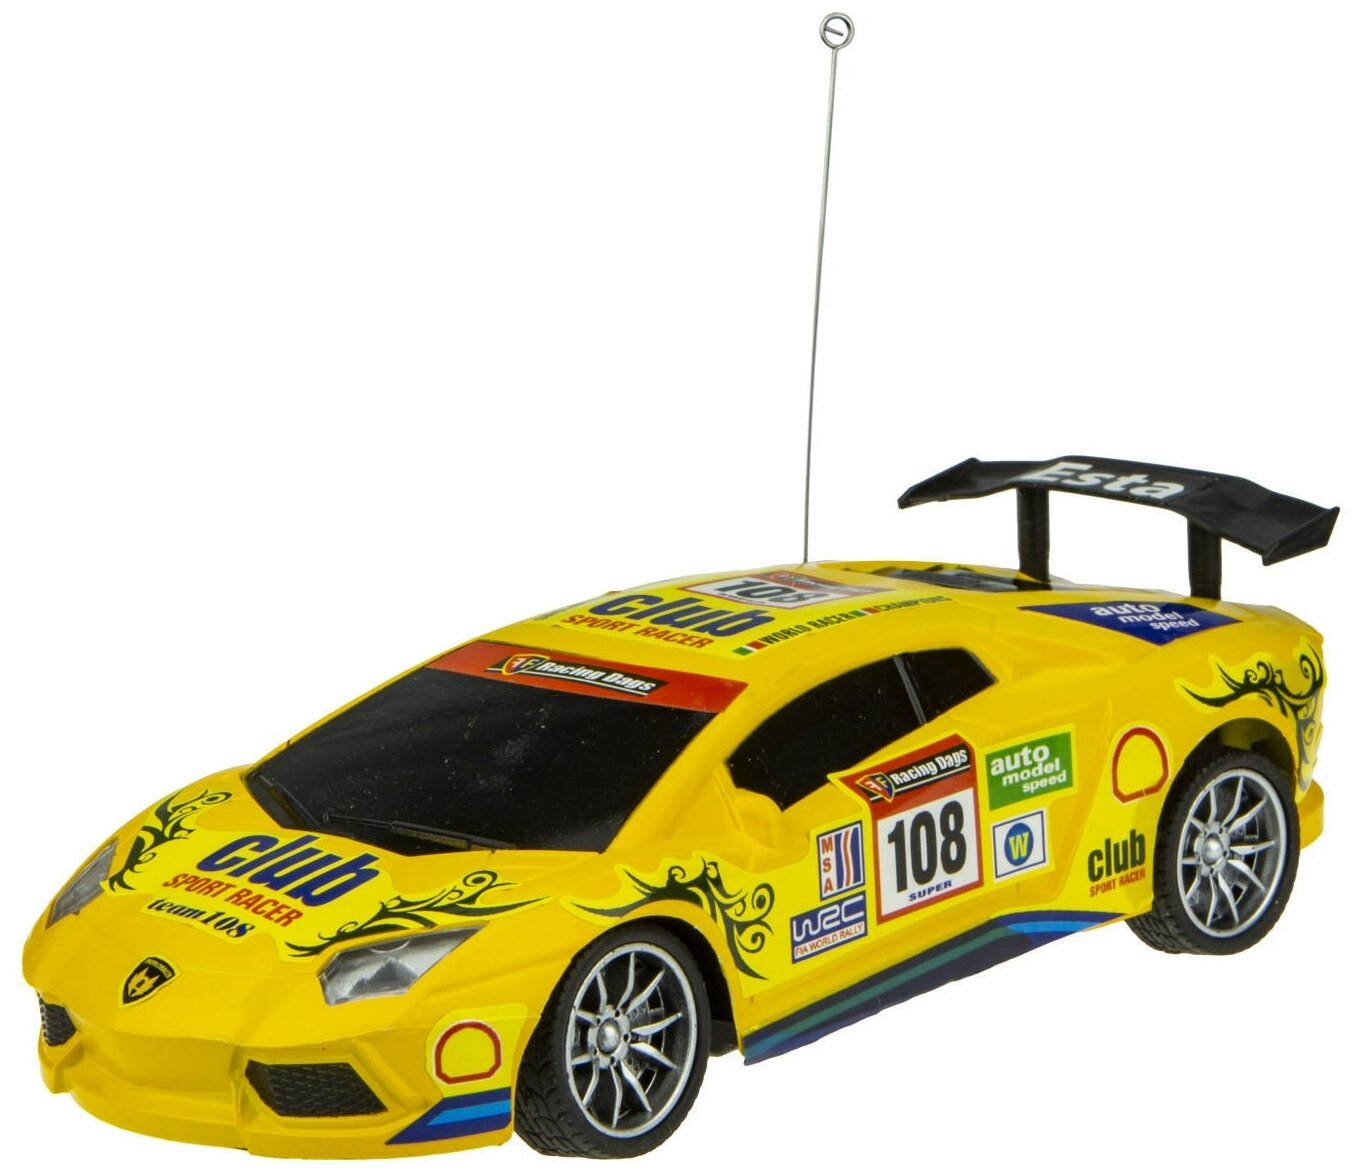 1 Toy Спортавто Машина на радиоуправлении 1:24 27 МГц Желтый